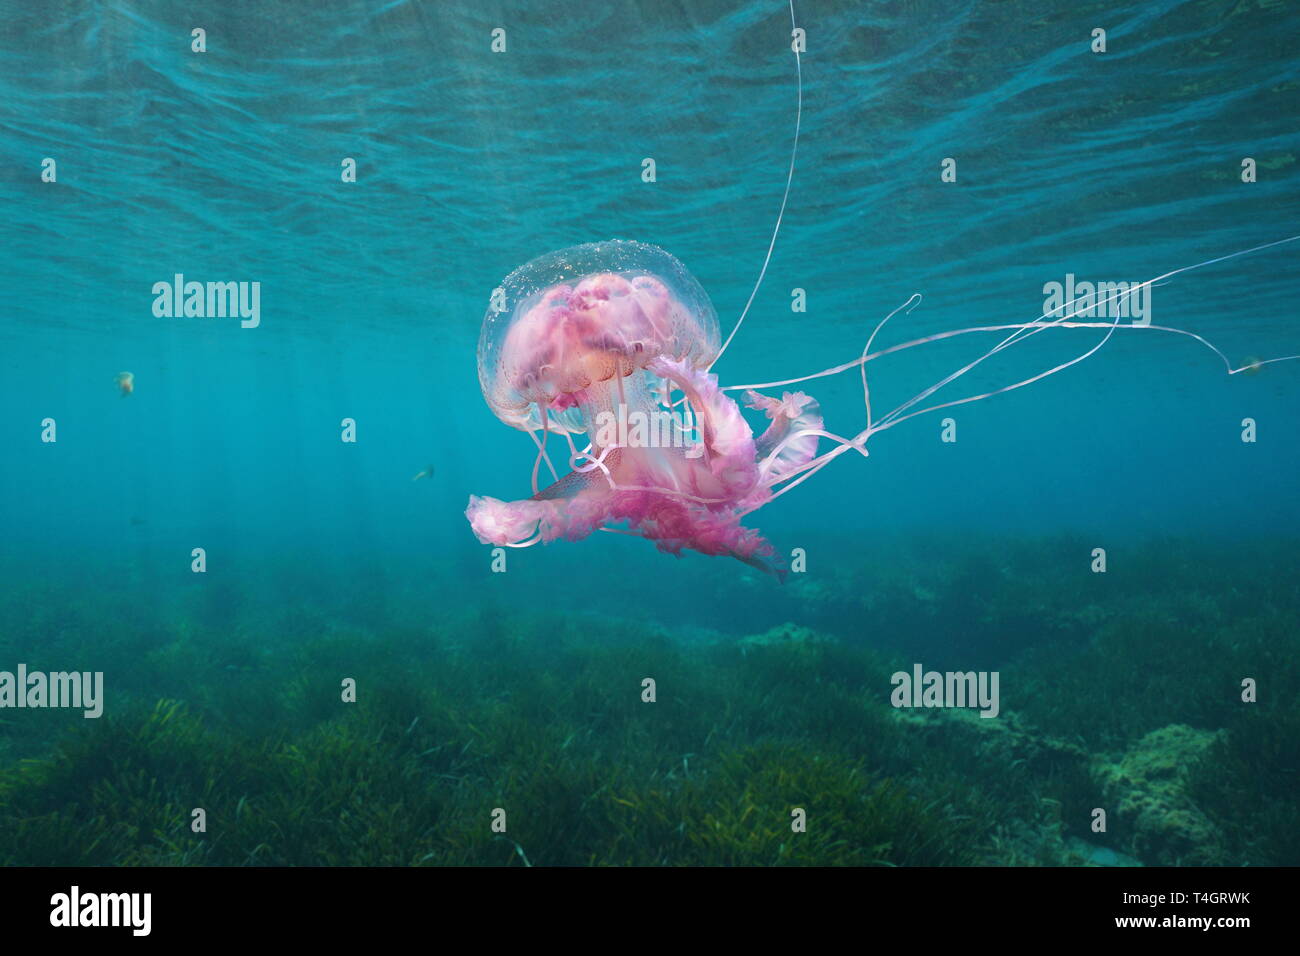 Belles méduses sous l'eau à la mer Méditerranée, Mauves Pelagia noctiluca stinger, Espagne Banque D'Images